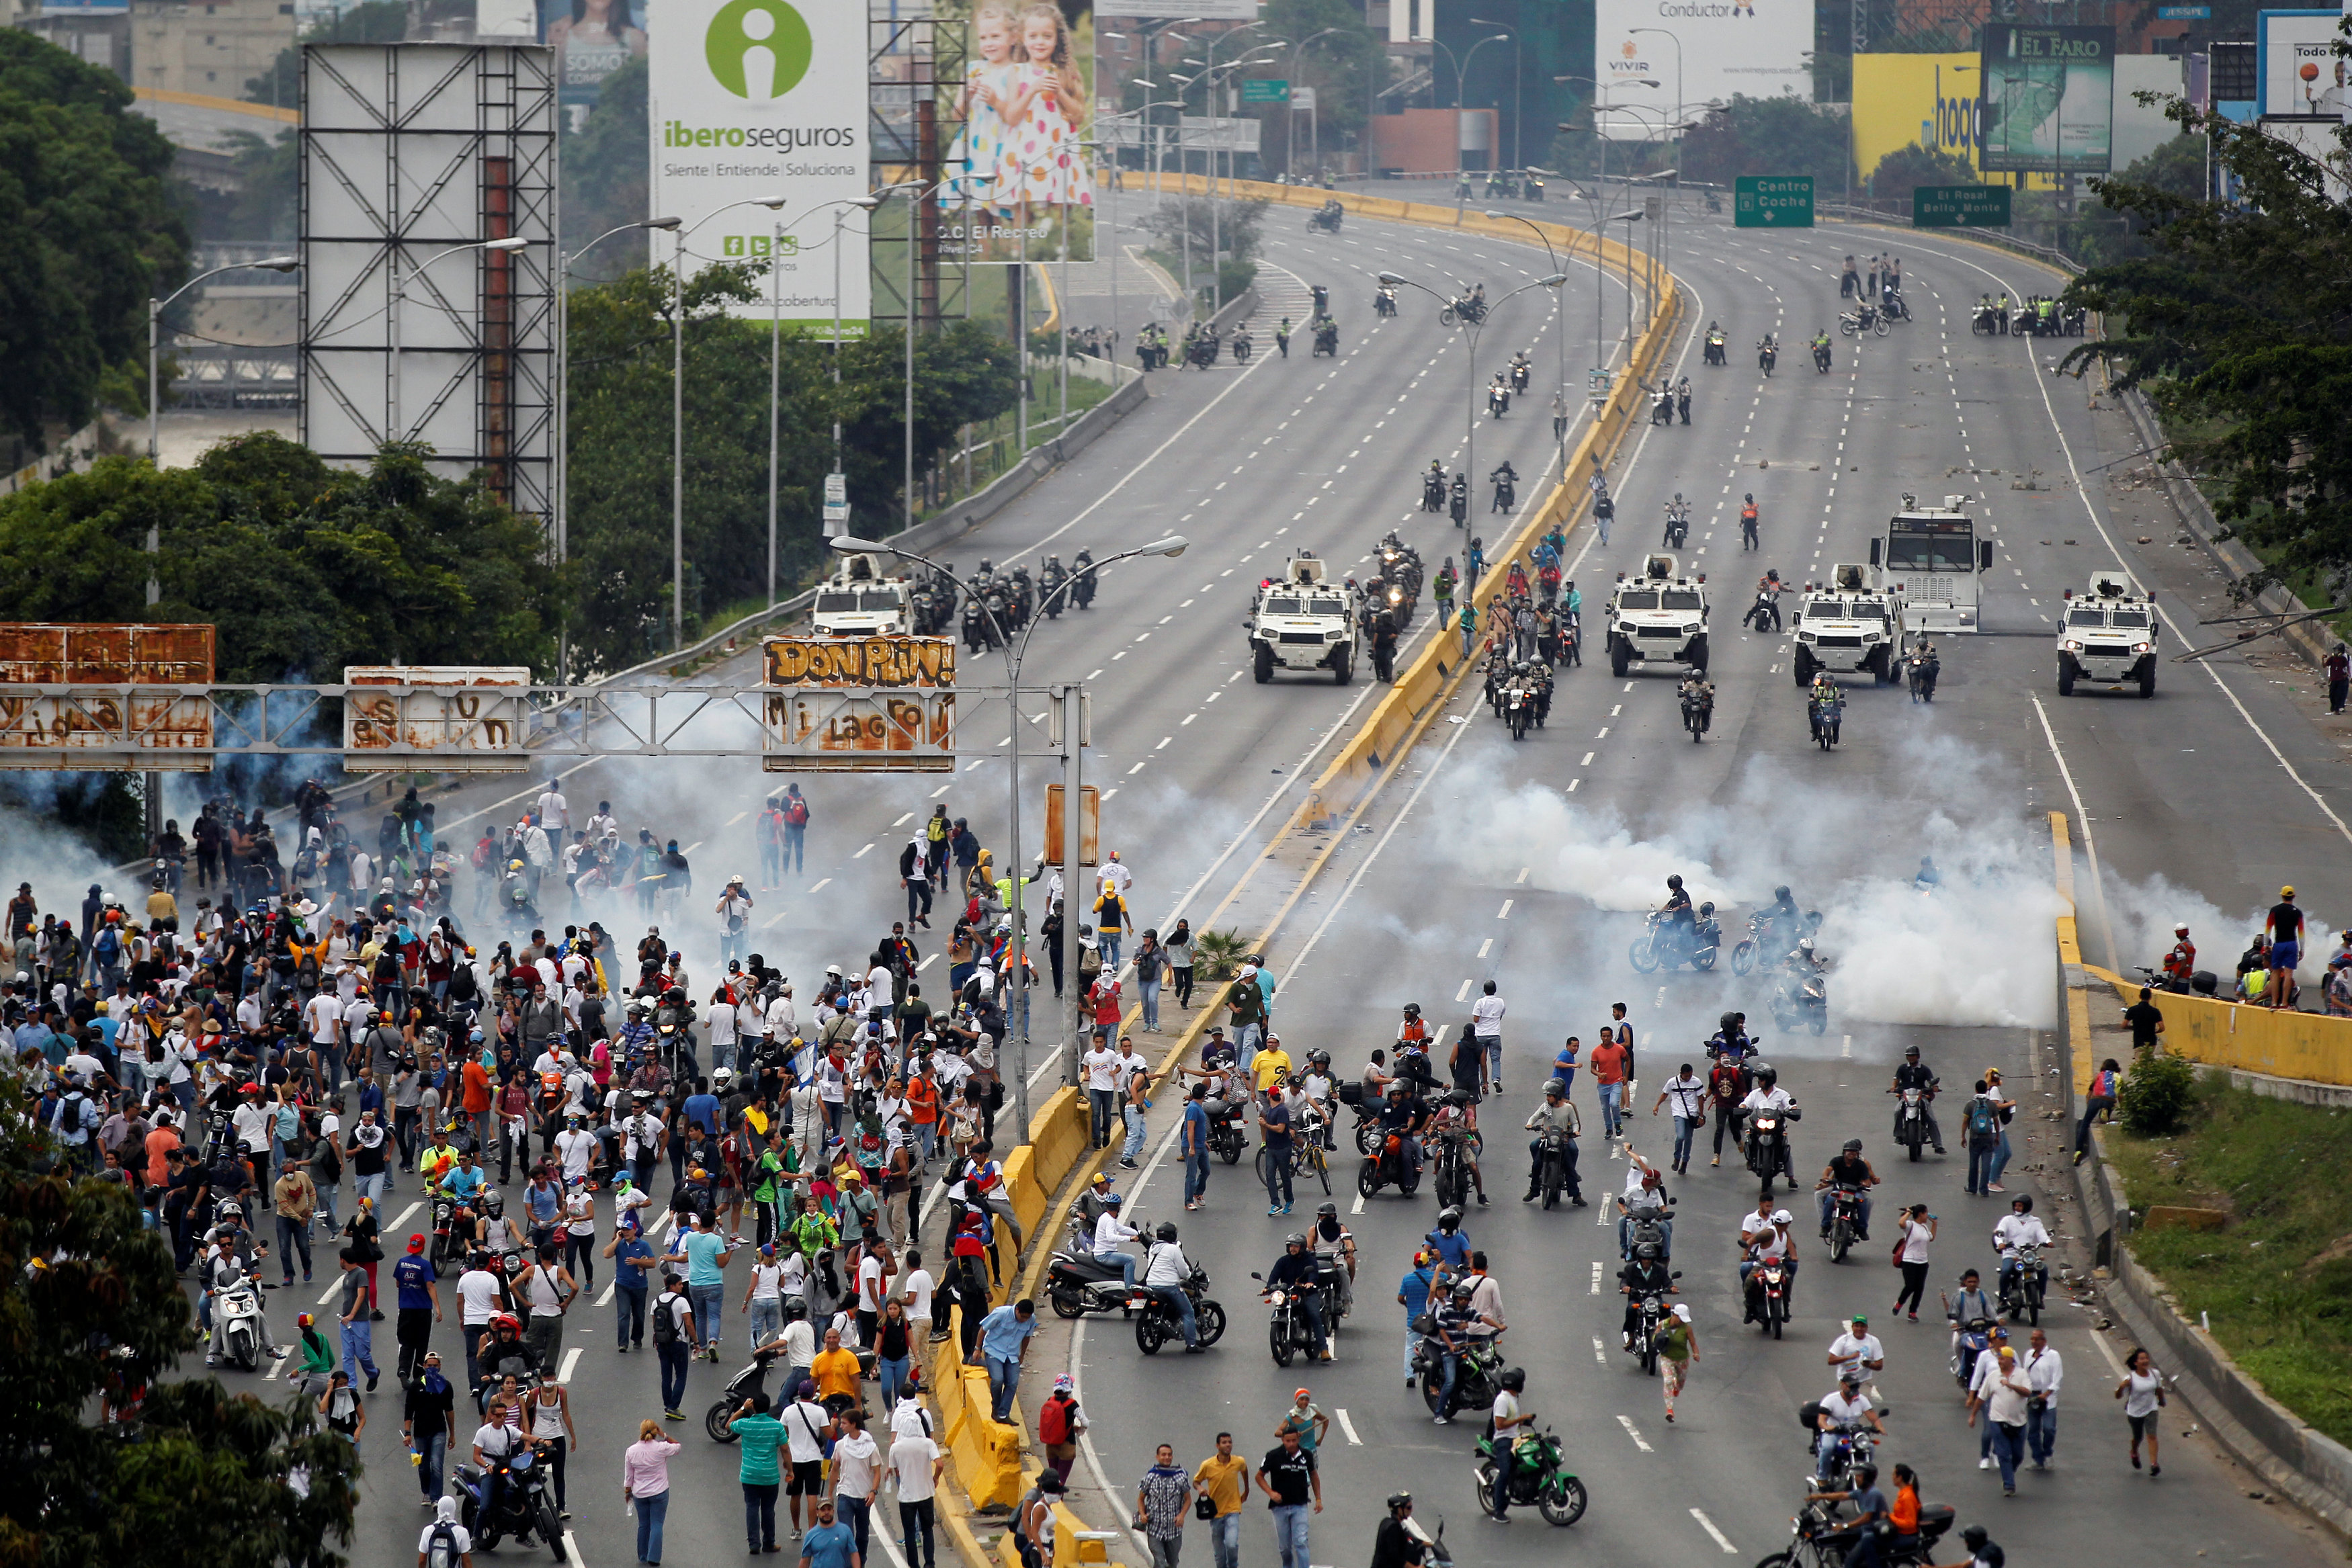 ¿Quién cederá? Chavismo y oposición apuestan al “desgaste” del rival